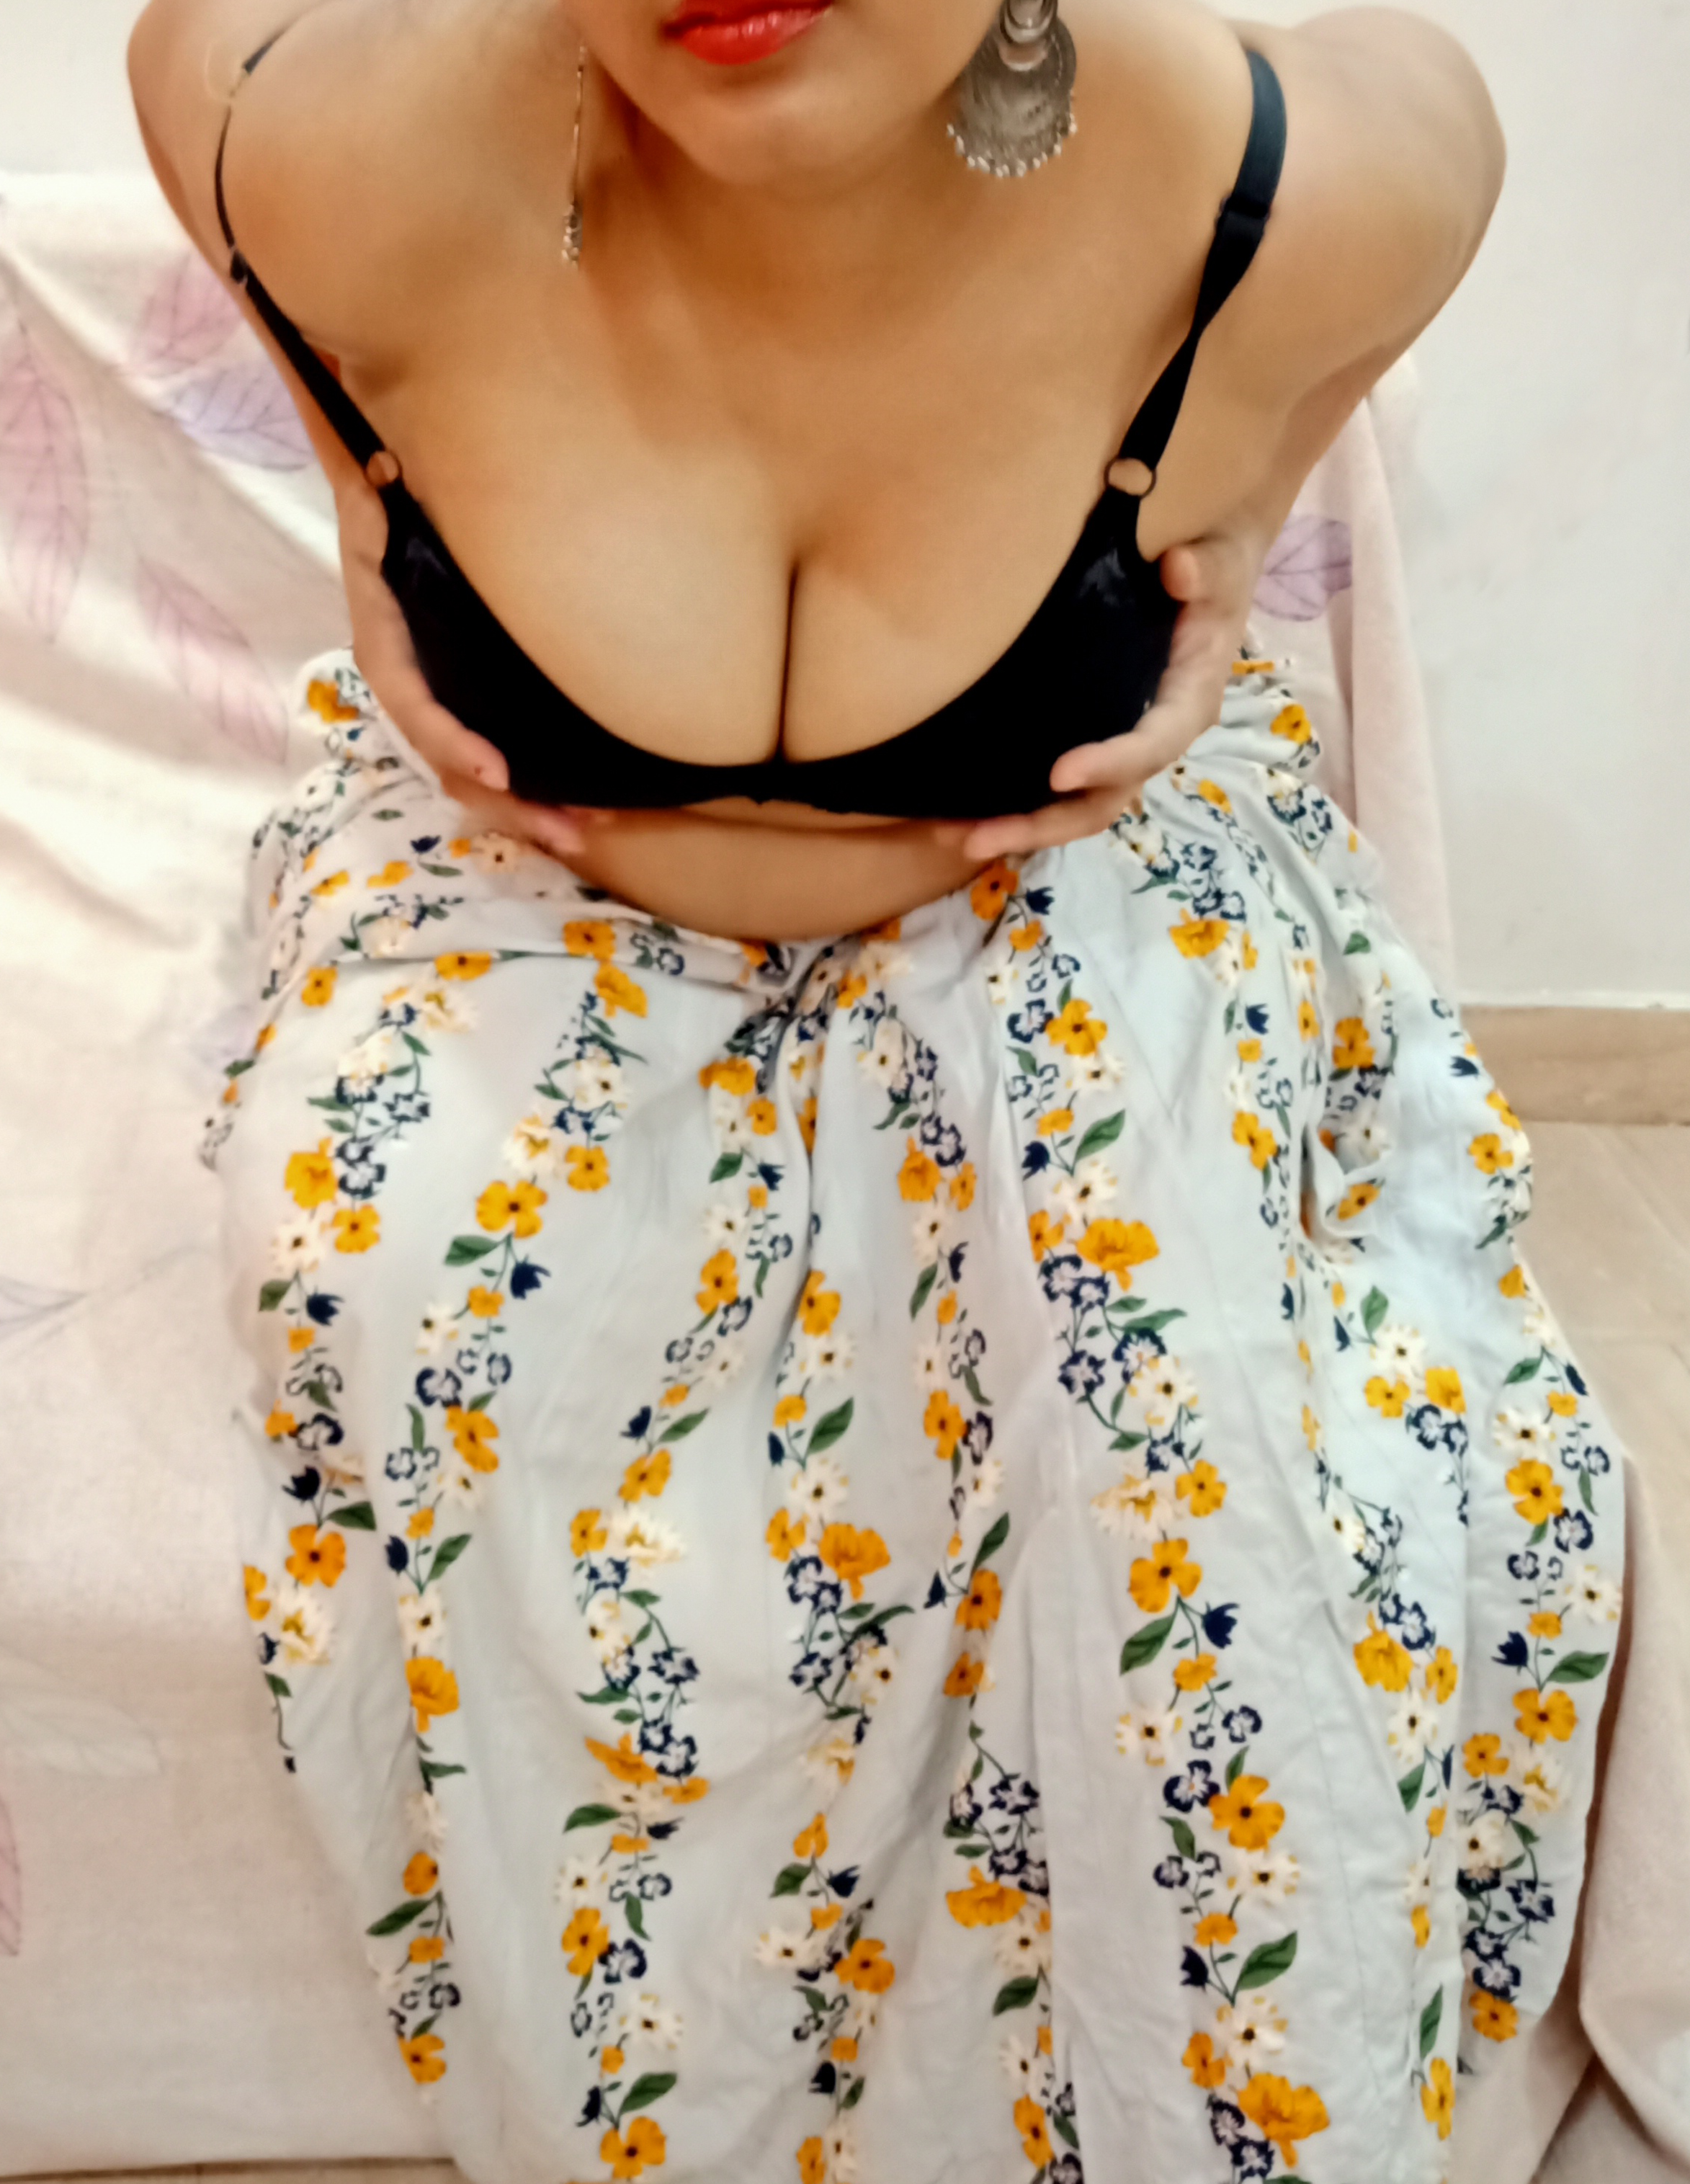 Sexy bhabhi ko nangi photos ke liye uksaya